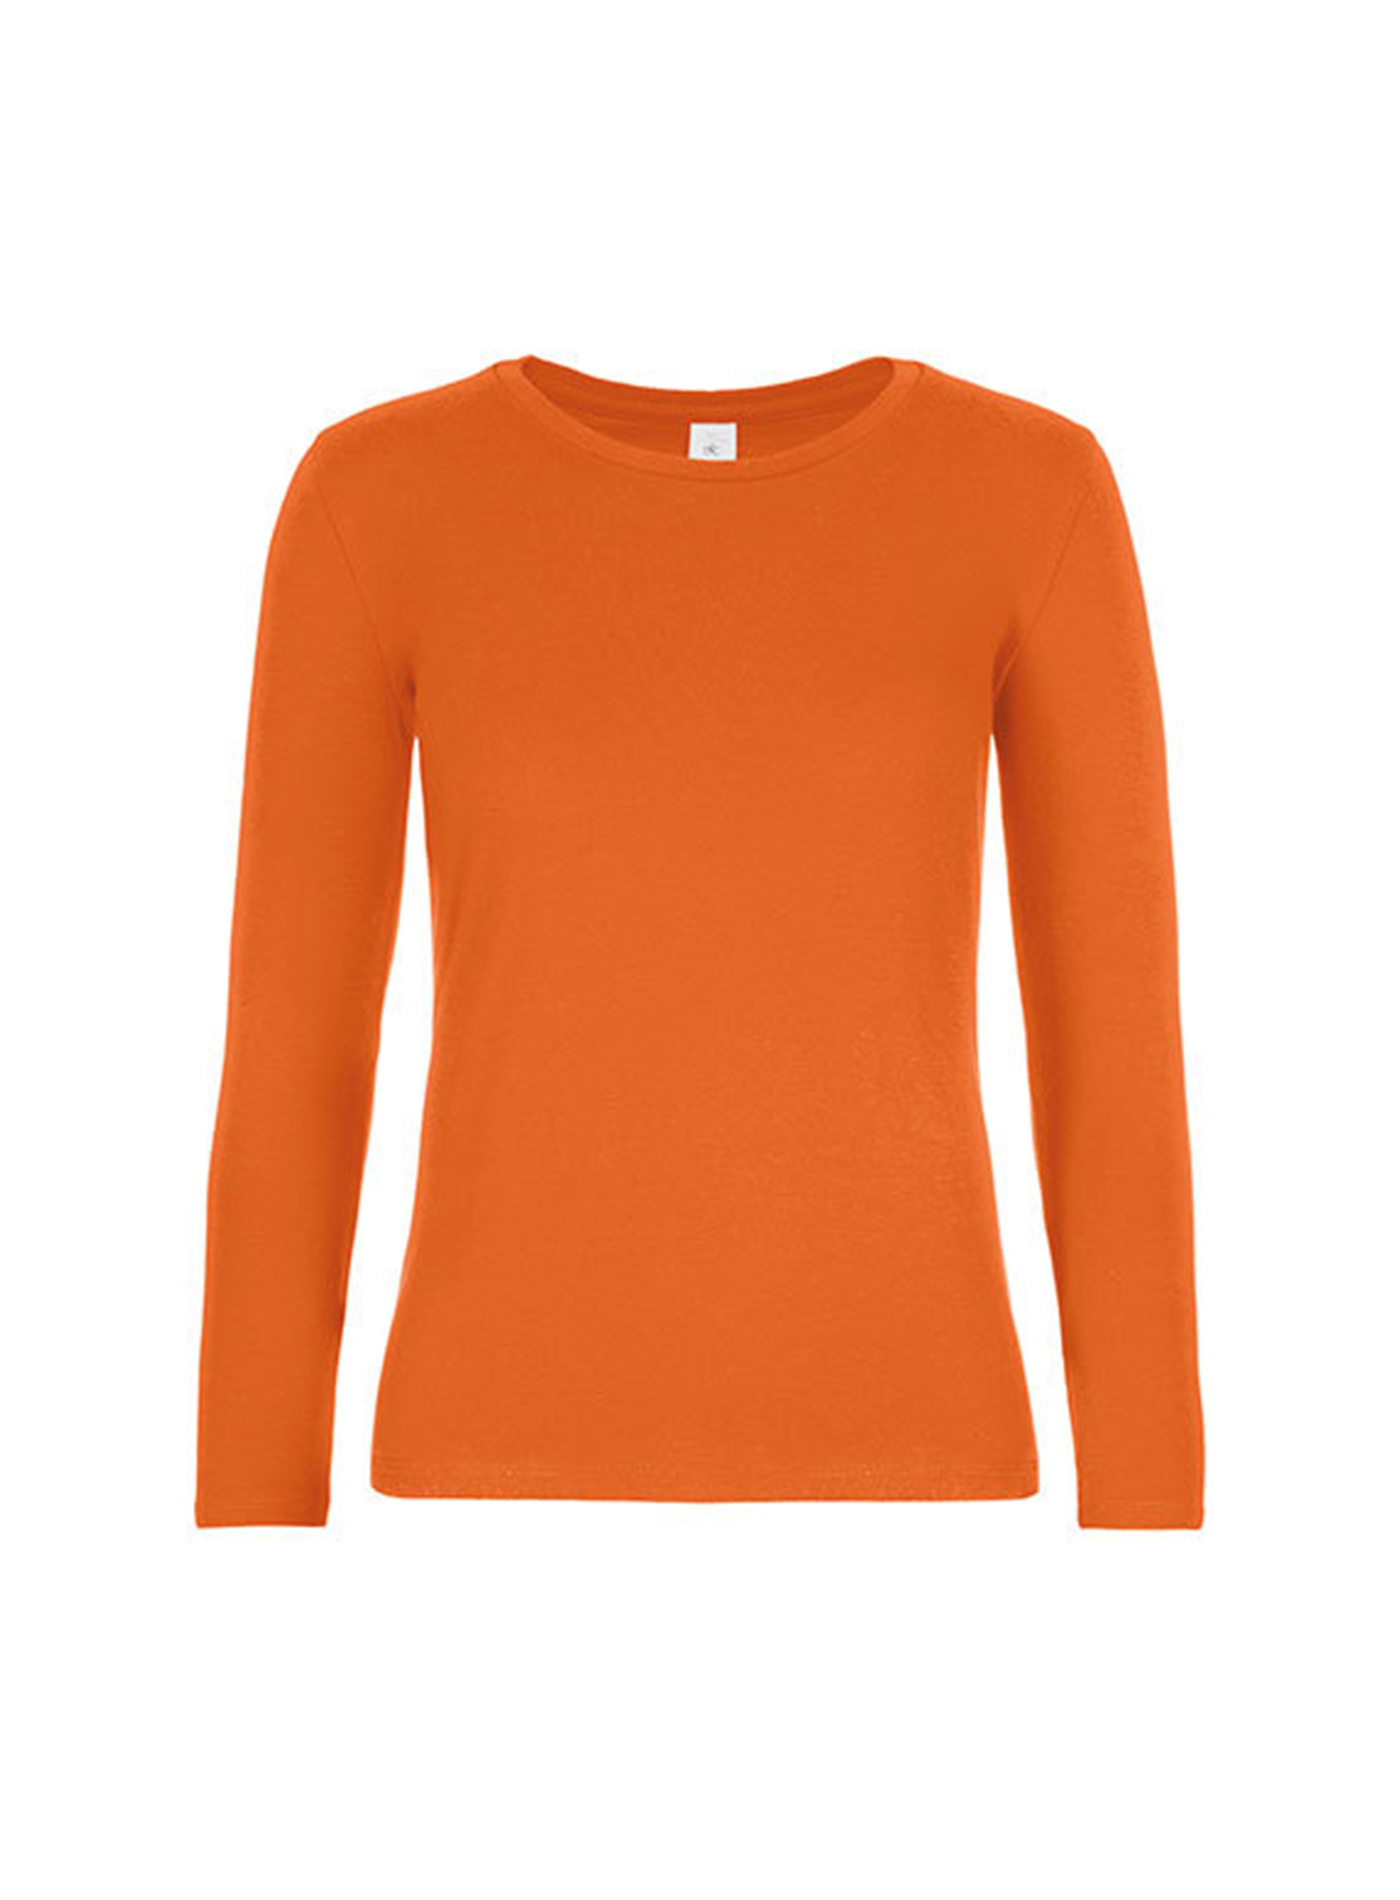 Dámské tričko s dlouhým rukávem B&C Collection - Oranžová XXL